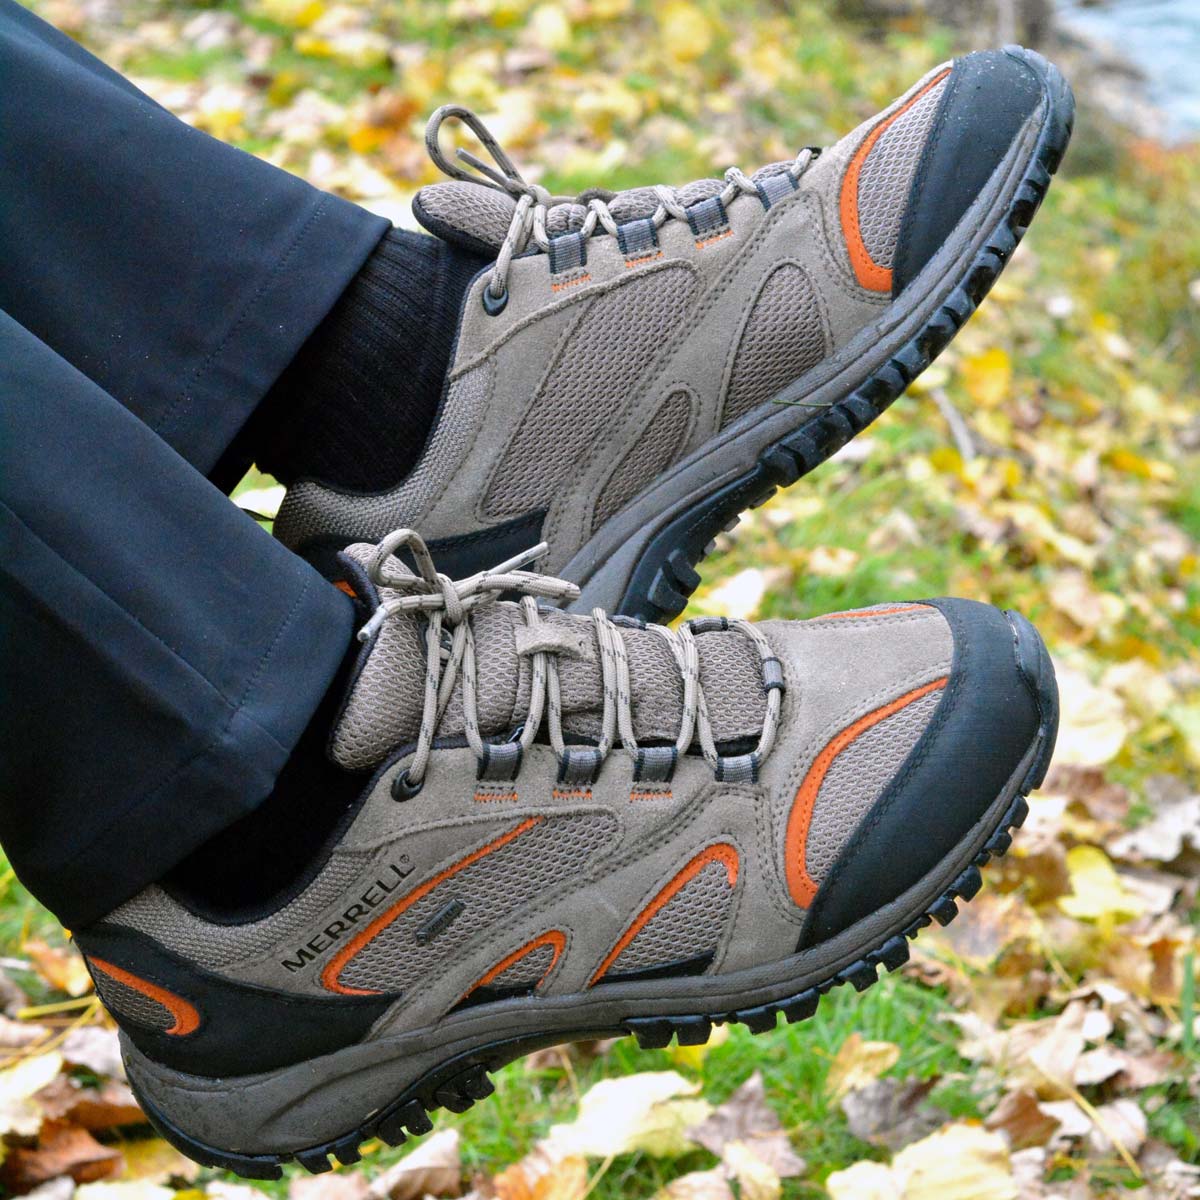 PHOENIX GORE GTX - Men’s trekking shoes